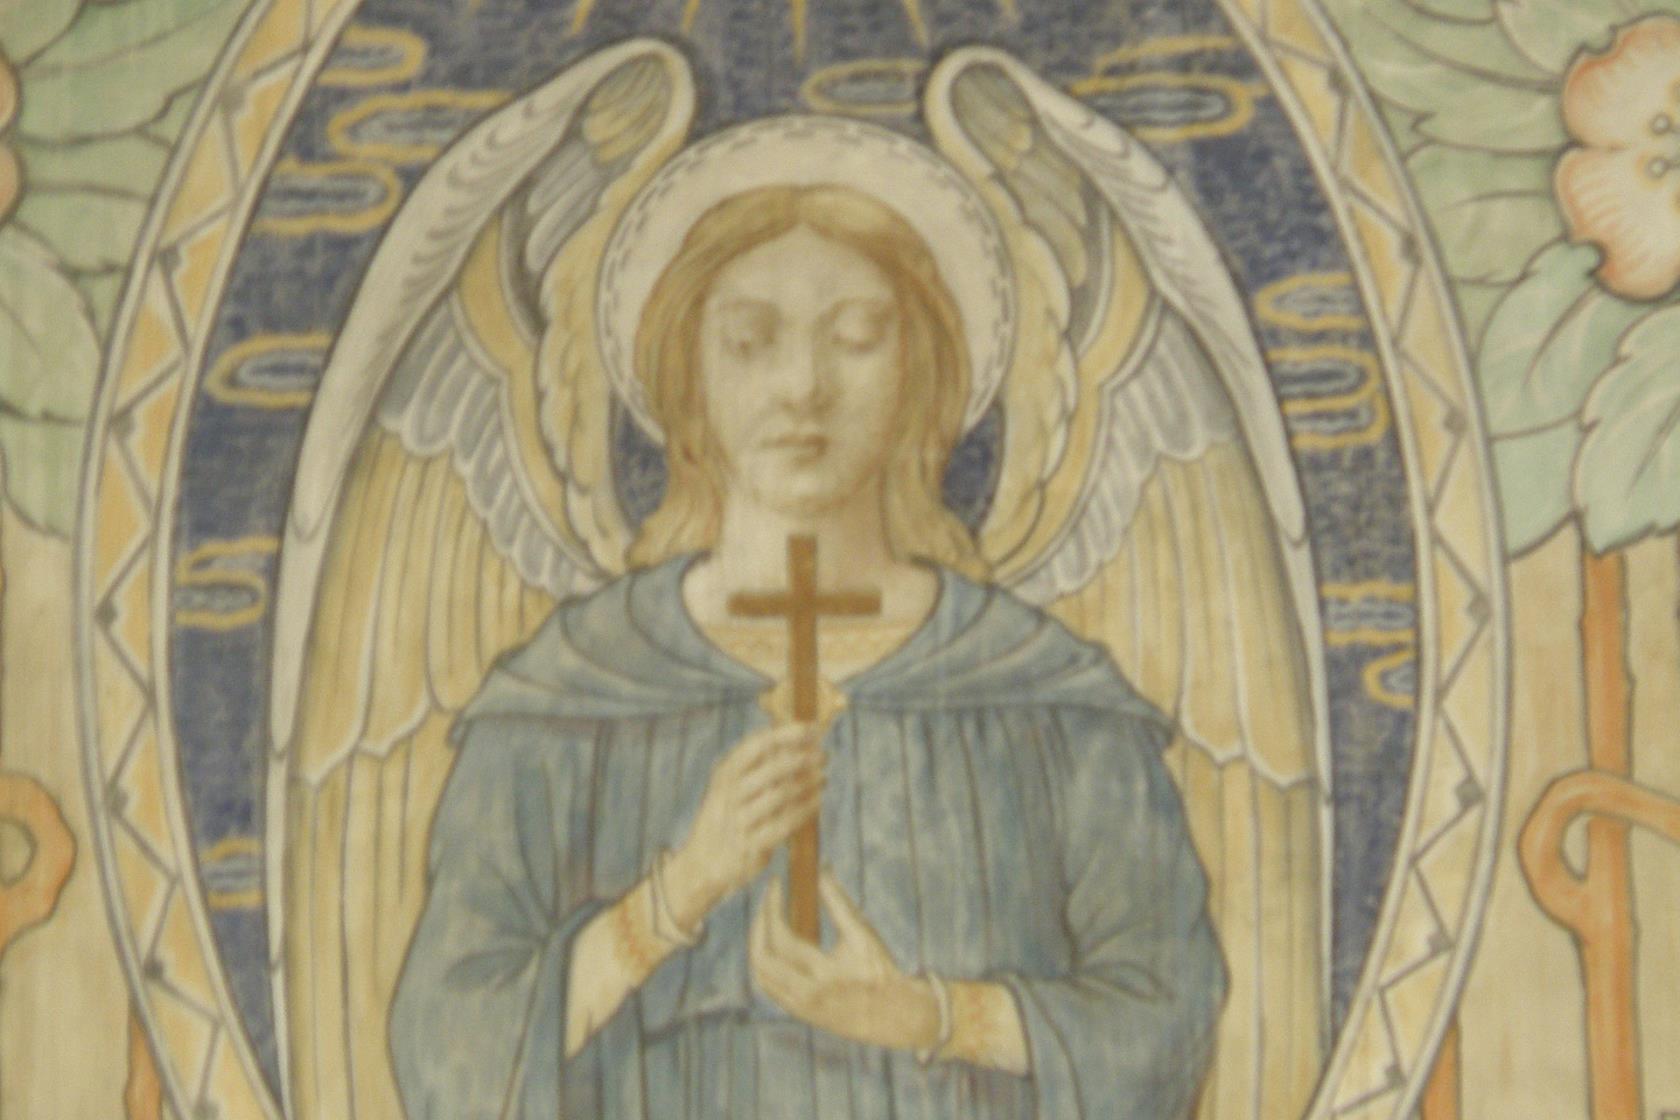 Väggmålning av ängel med kors i handen.